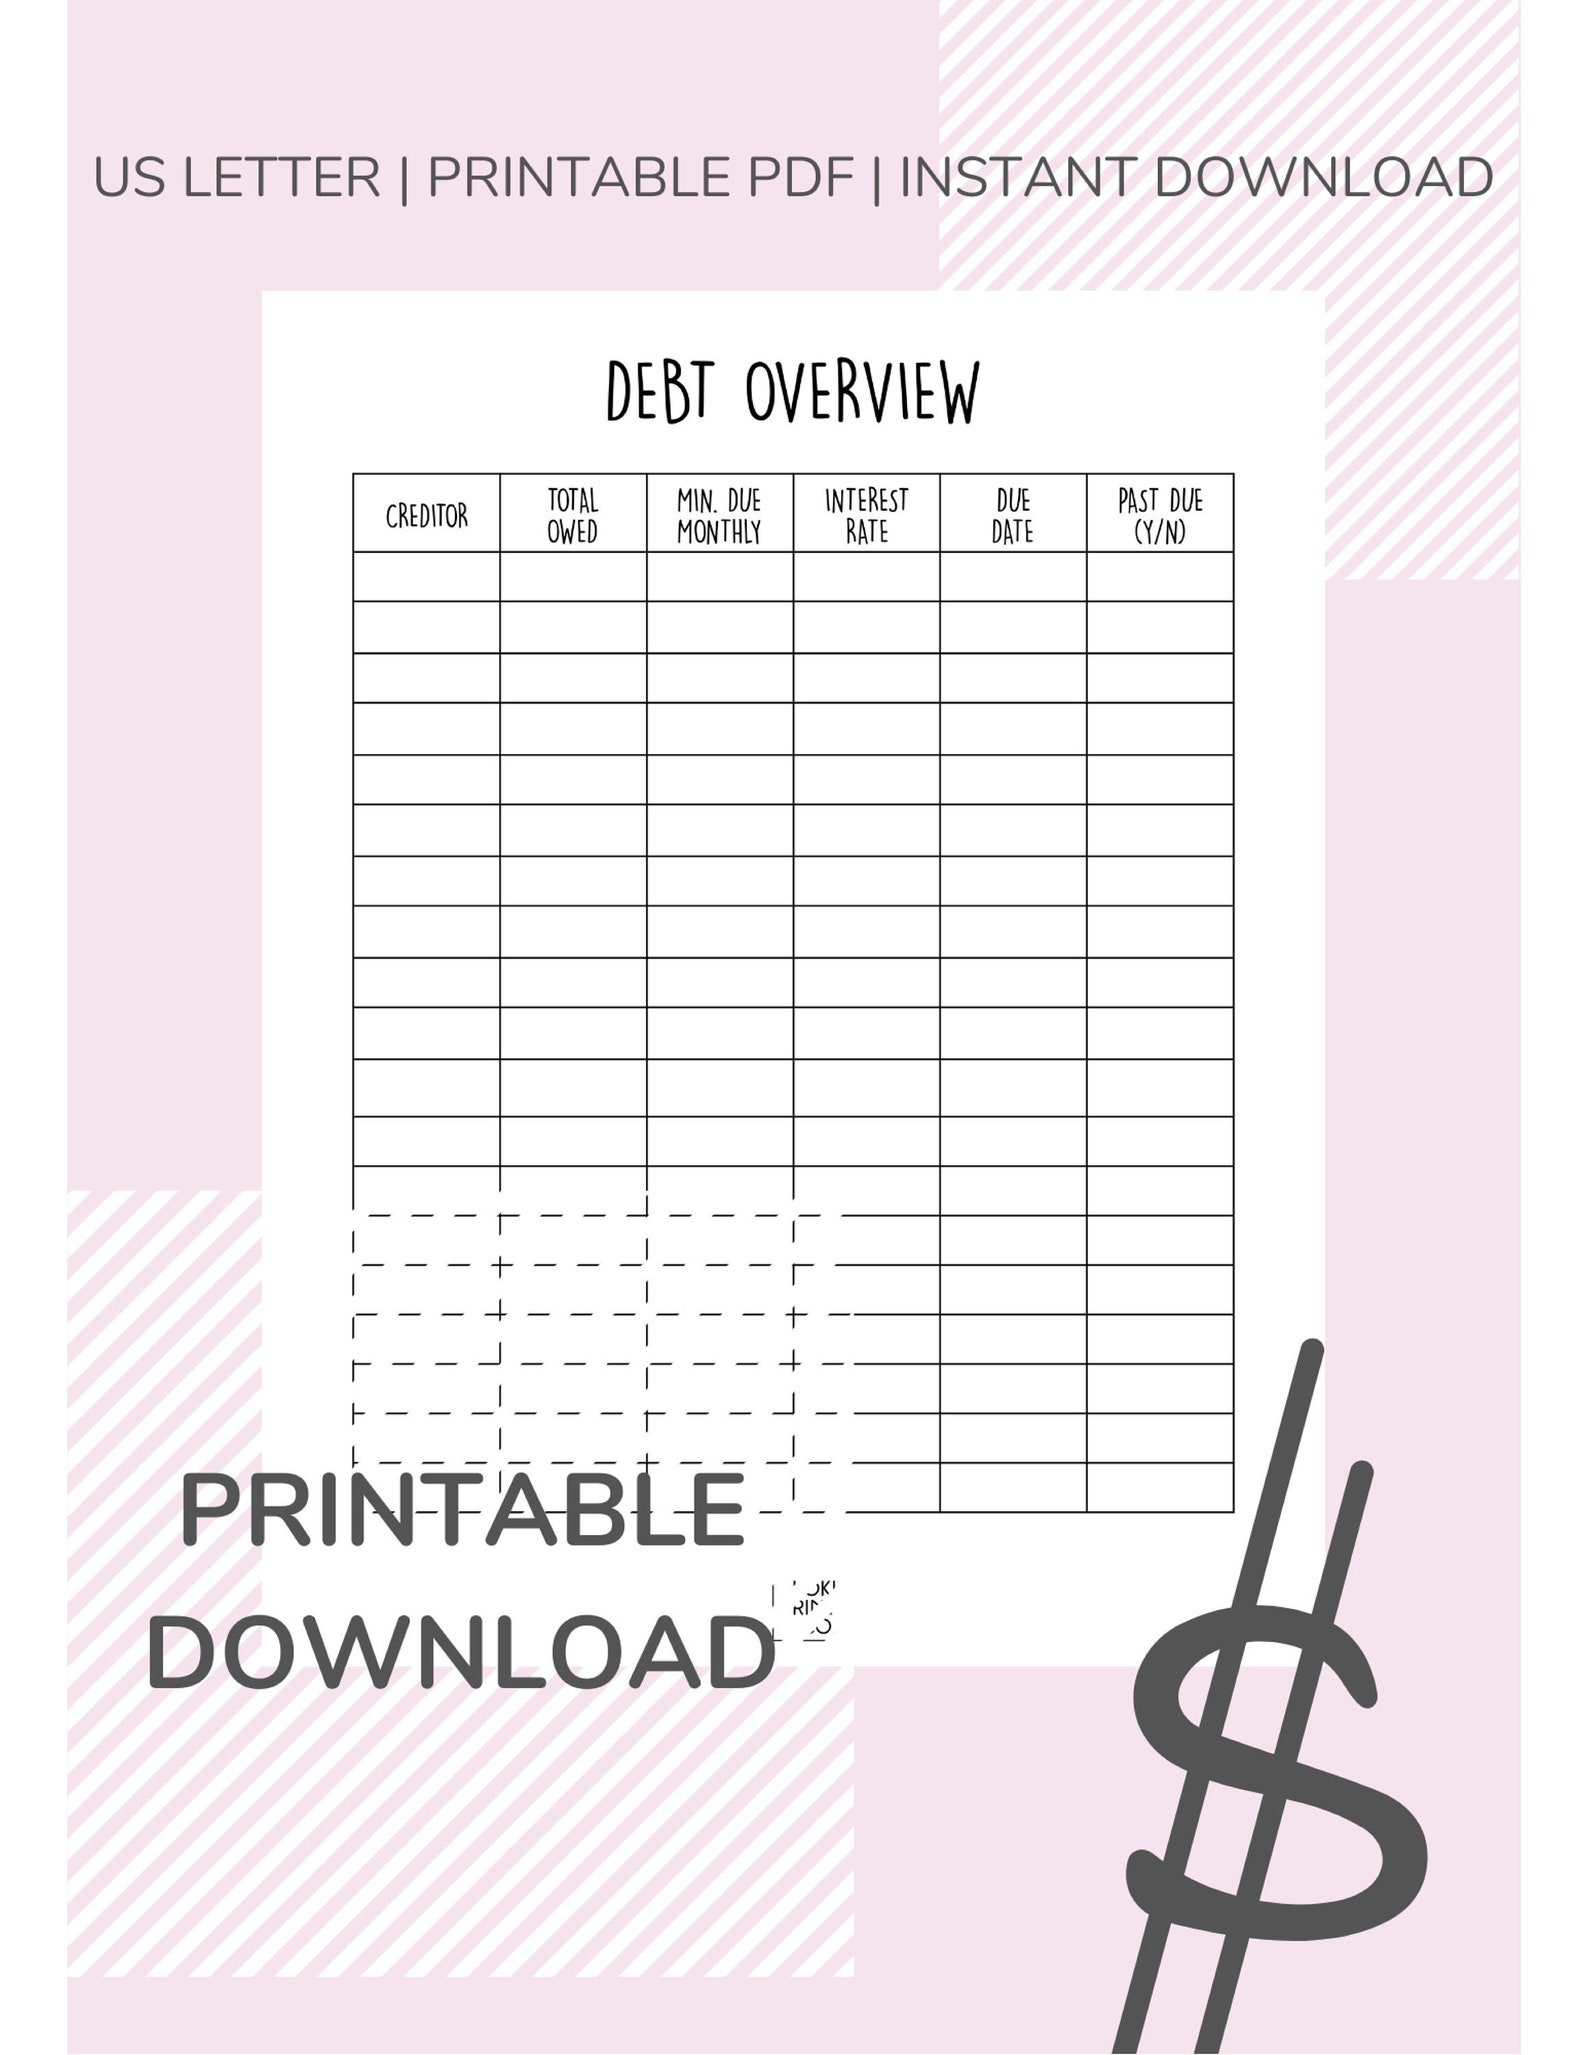 debt-overview-worksheet-digital-download-printable-pdf-etsy